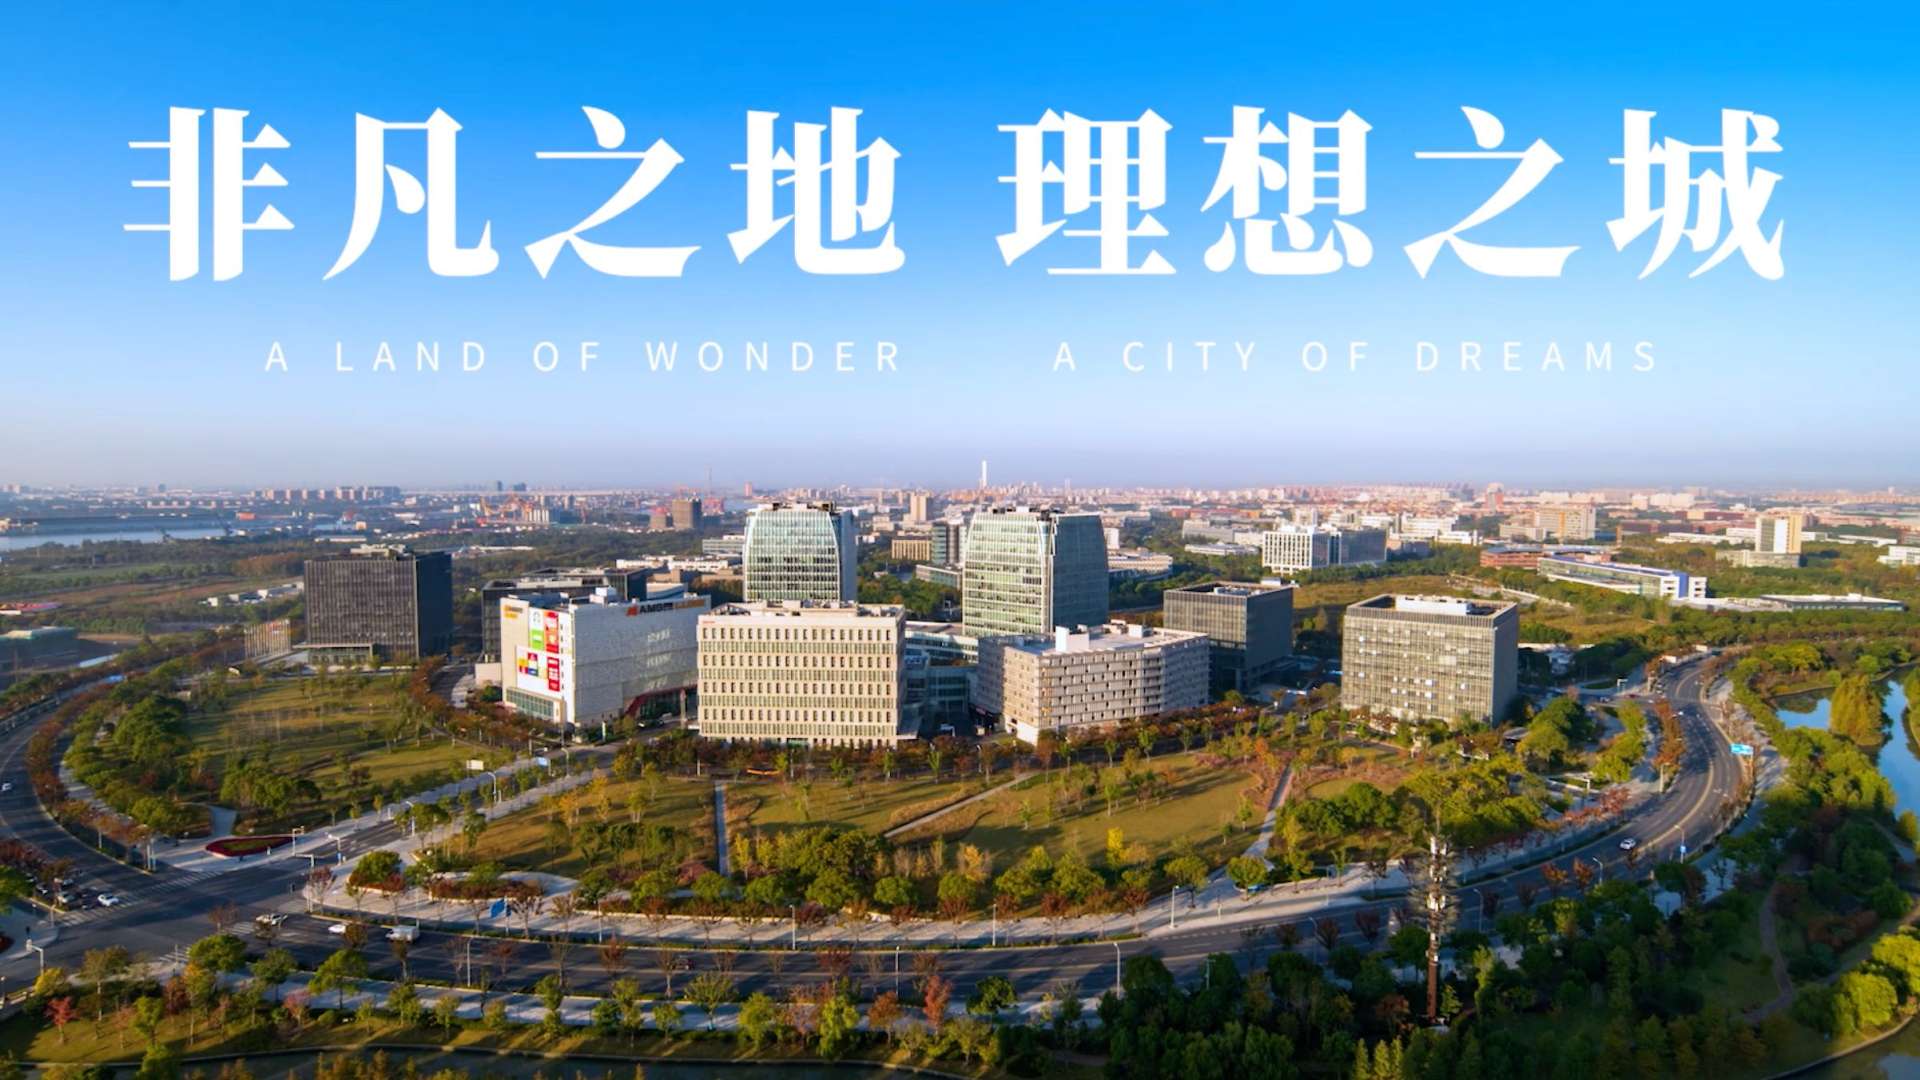 上海紫竹高新技术产业开发区宣传片 导演版